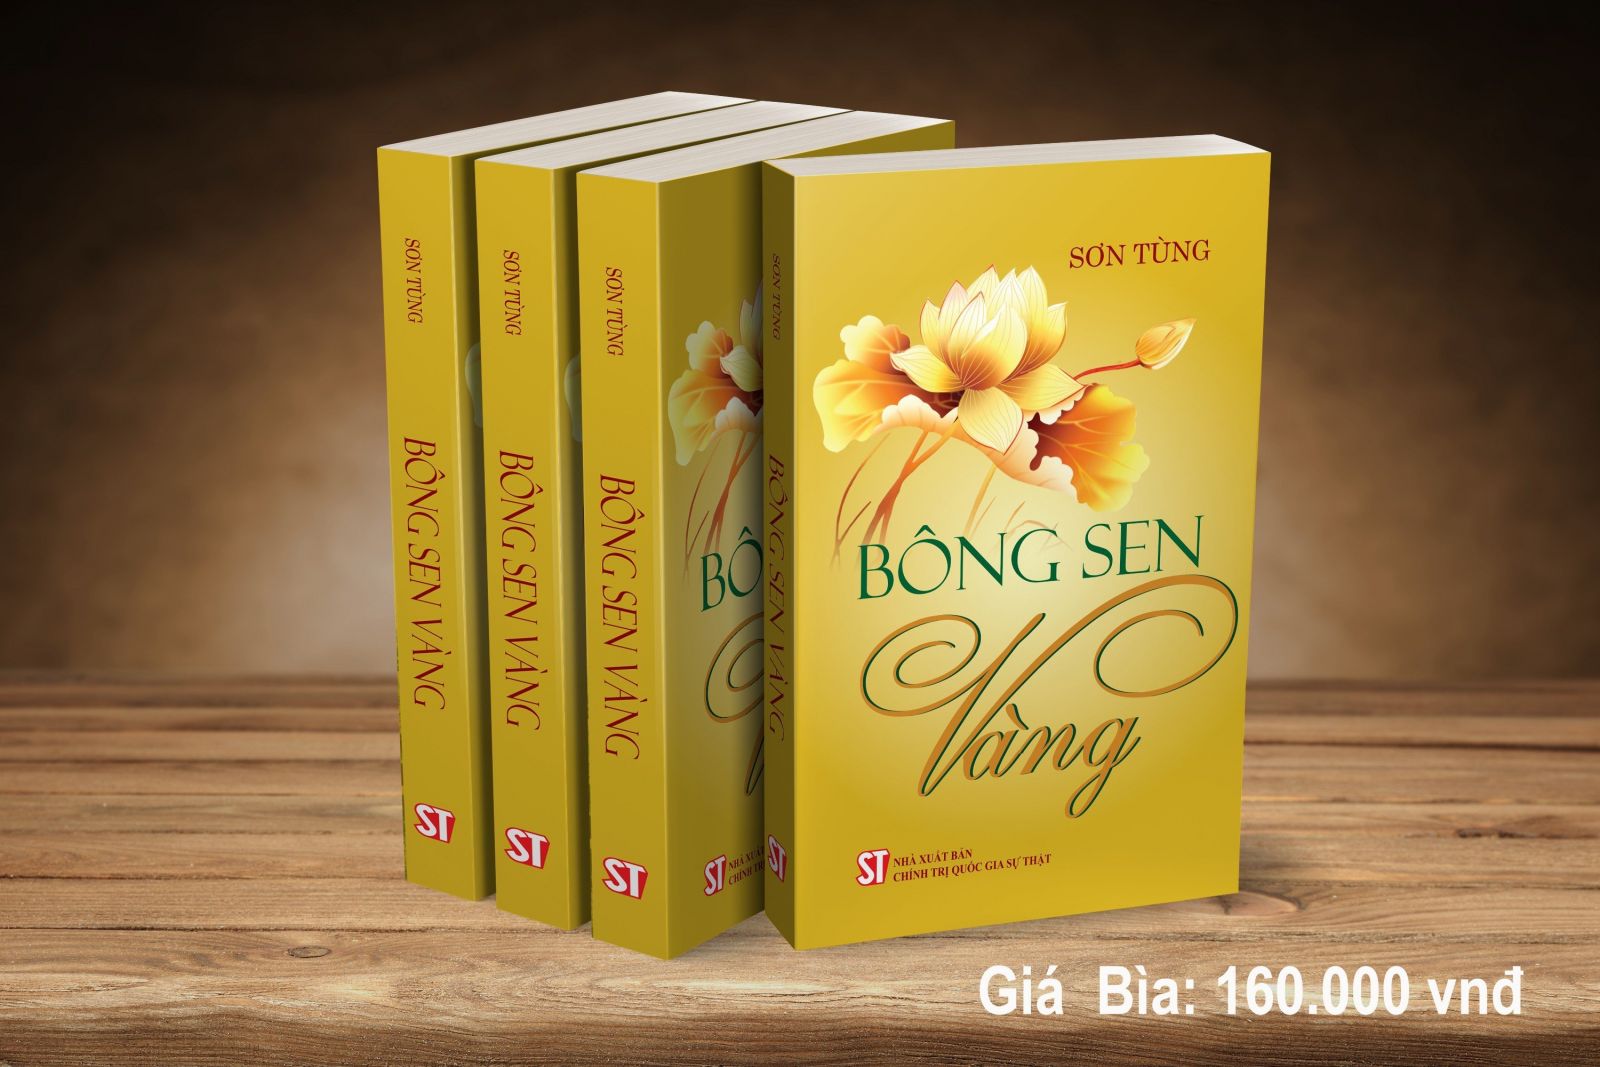 Bông sen vàng - Cuốn sách ghi dấu thời niên thiếu của Chủ tịch Hồ Chí Minh